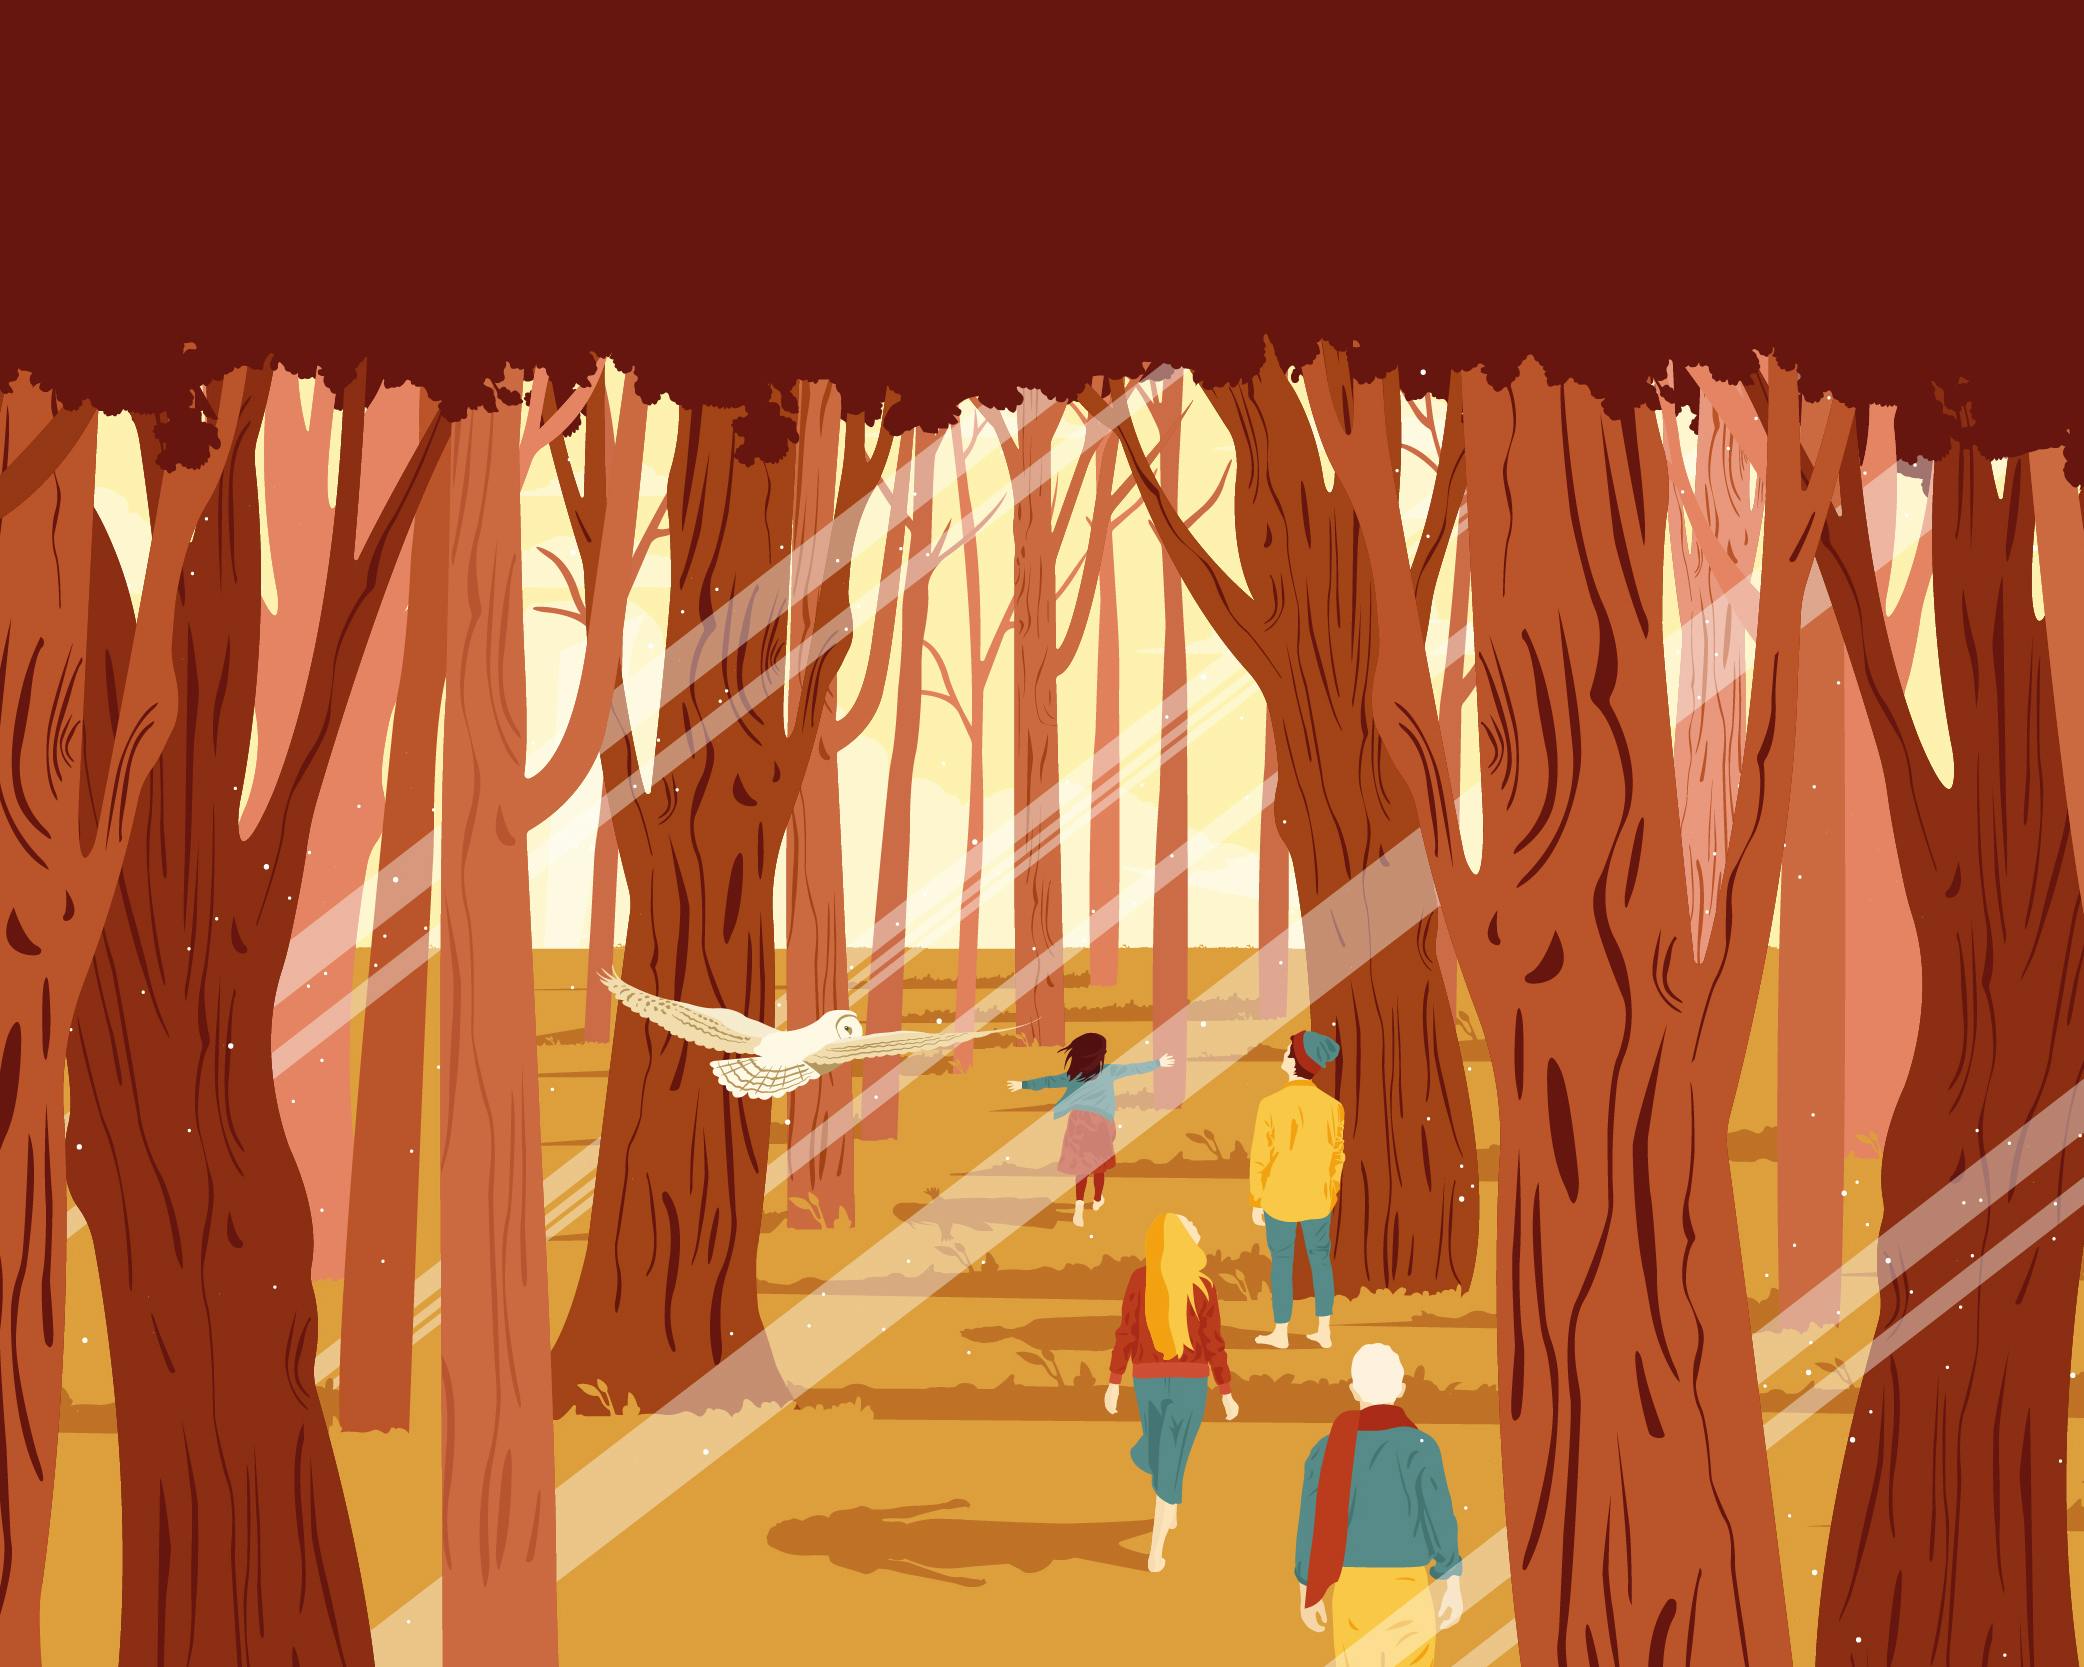 Grafica che rappresenta il bosco con persone che camminano, i colori dominanti sono arancione e rosso